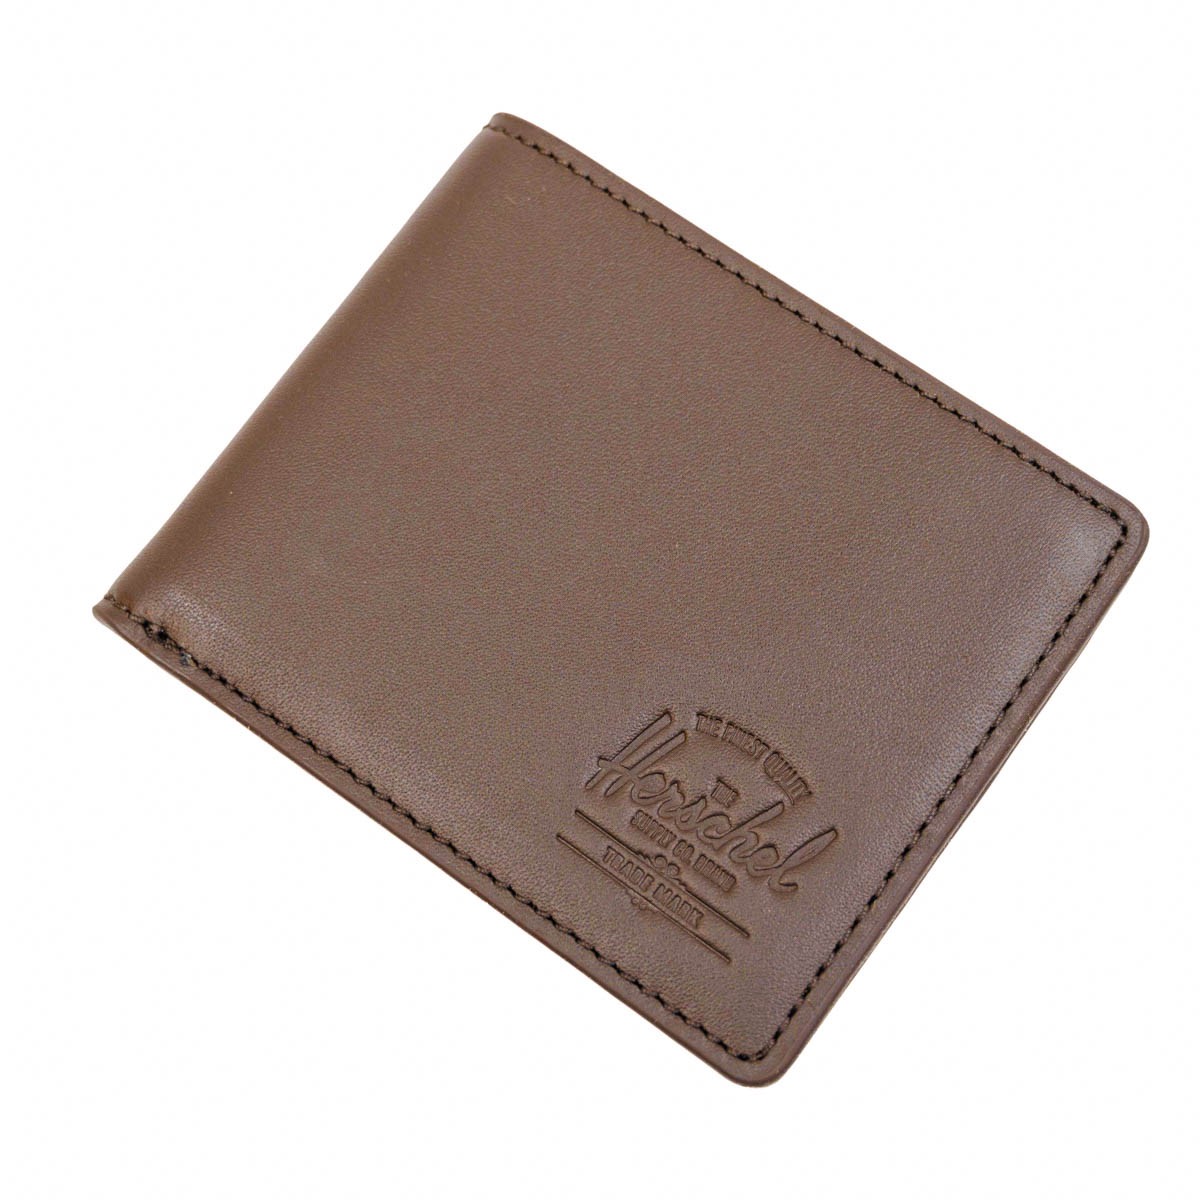 Herschel Hank Leather RFID Wallet Brown 銀包 啡色皮革